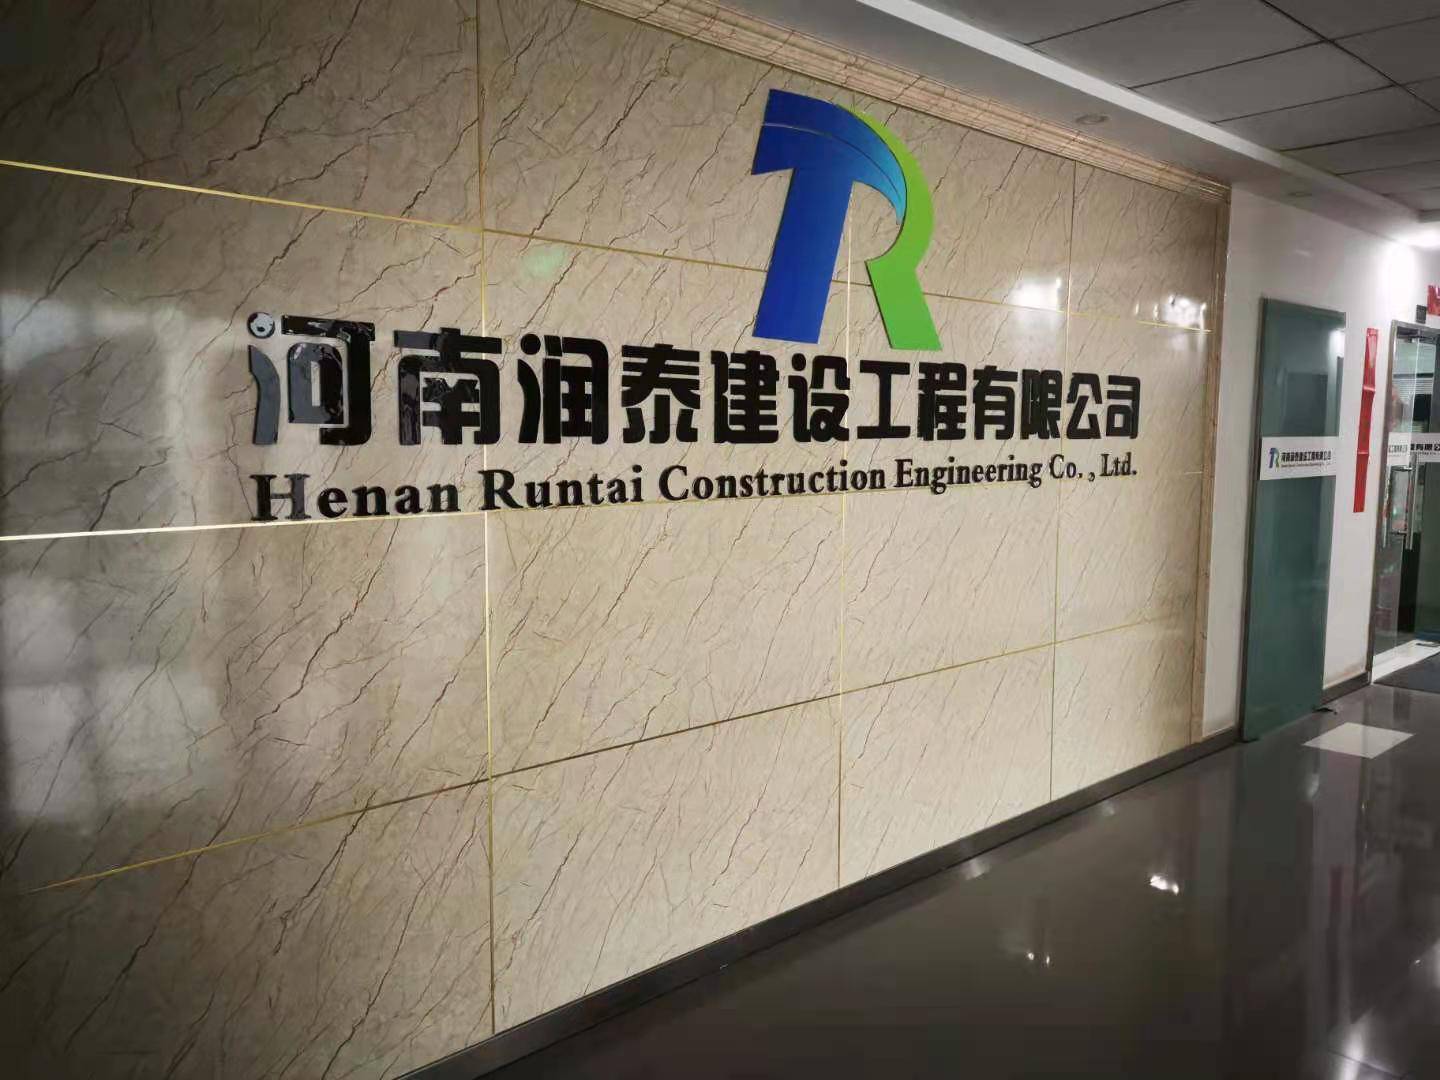 河南润泰建设工程有限公司企业形象